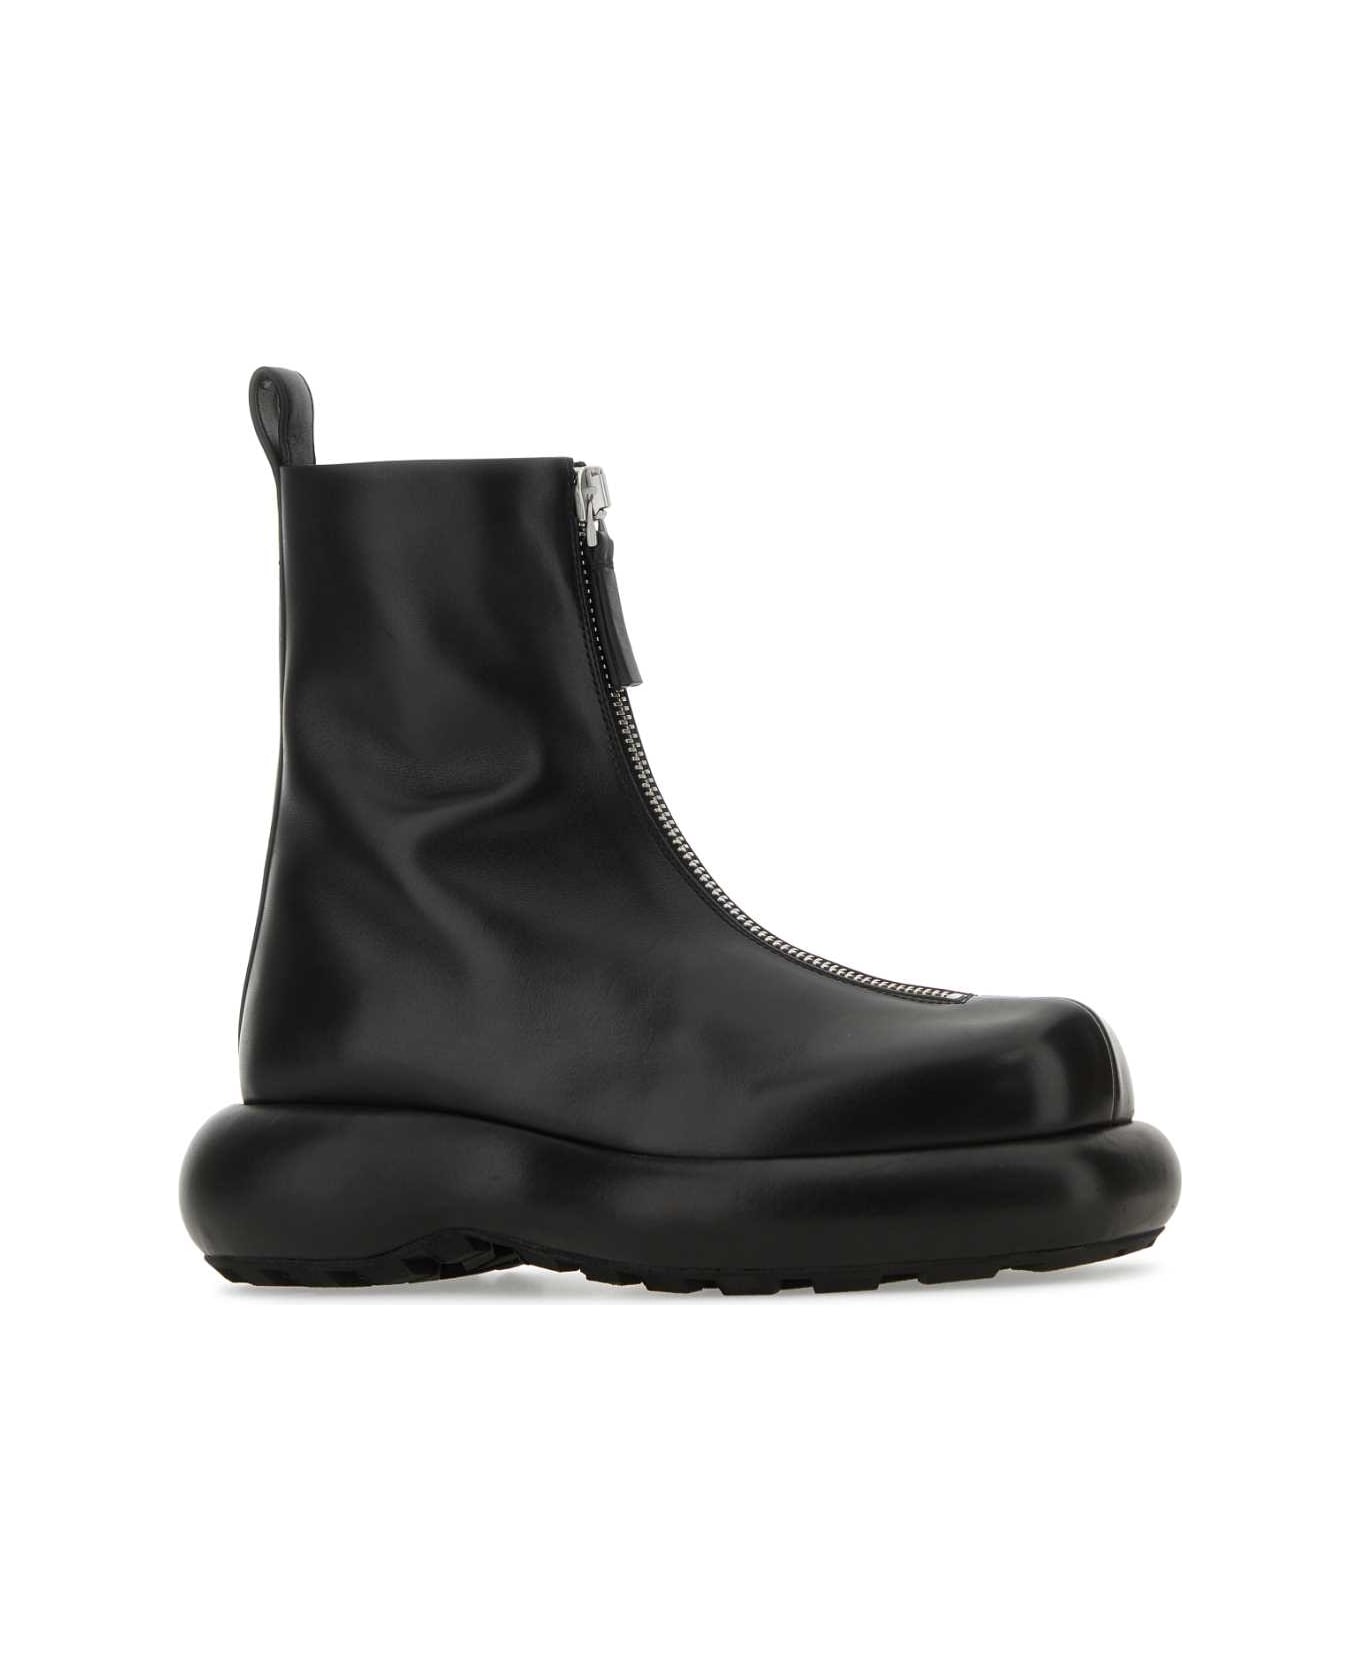 Jil Sander Black Leather Ankle Boots - 001